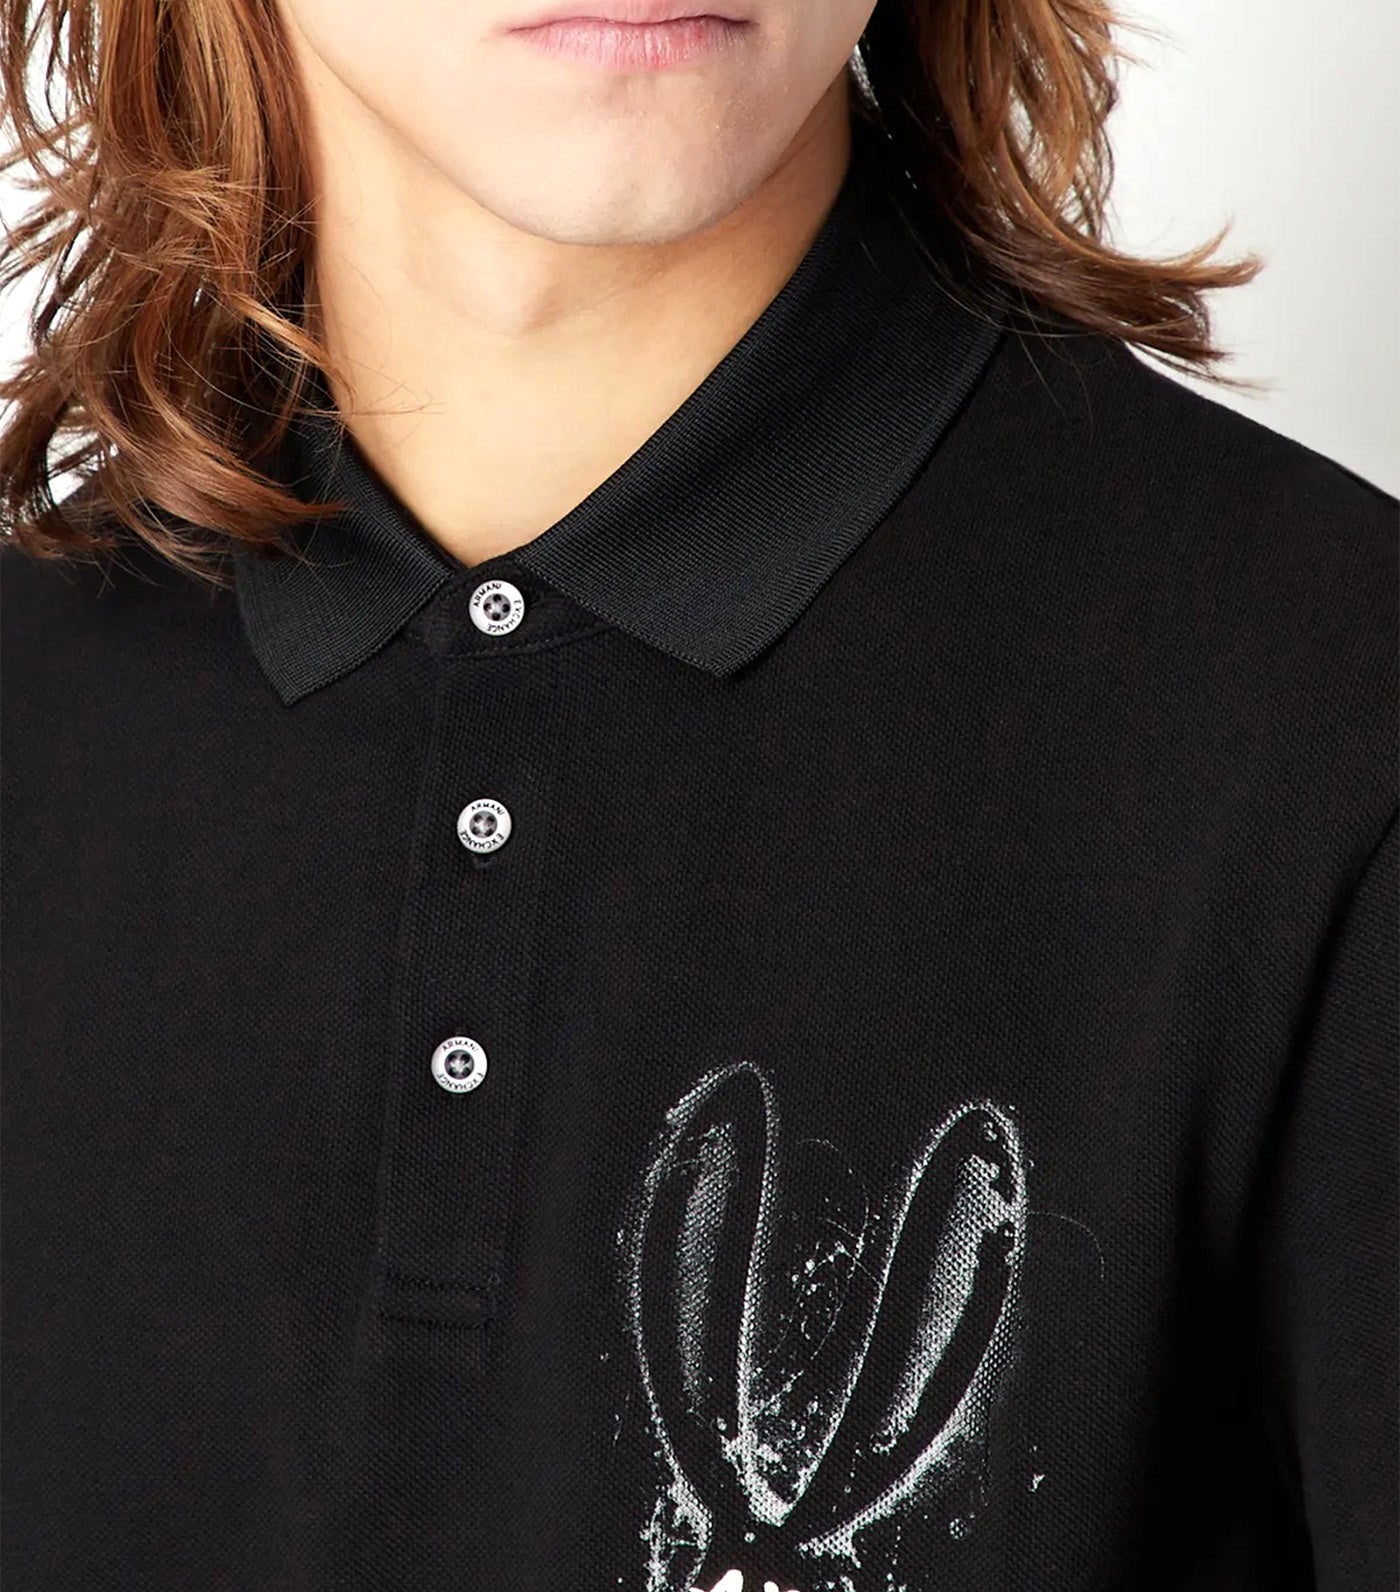 Lunar New Year Cotton Piquet Polo Shirt Black